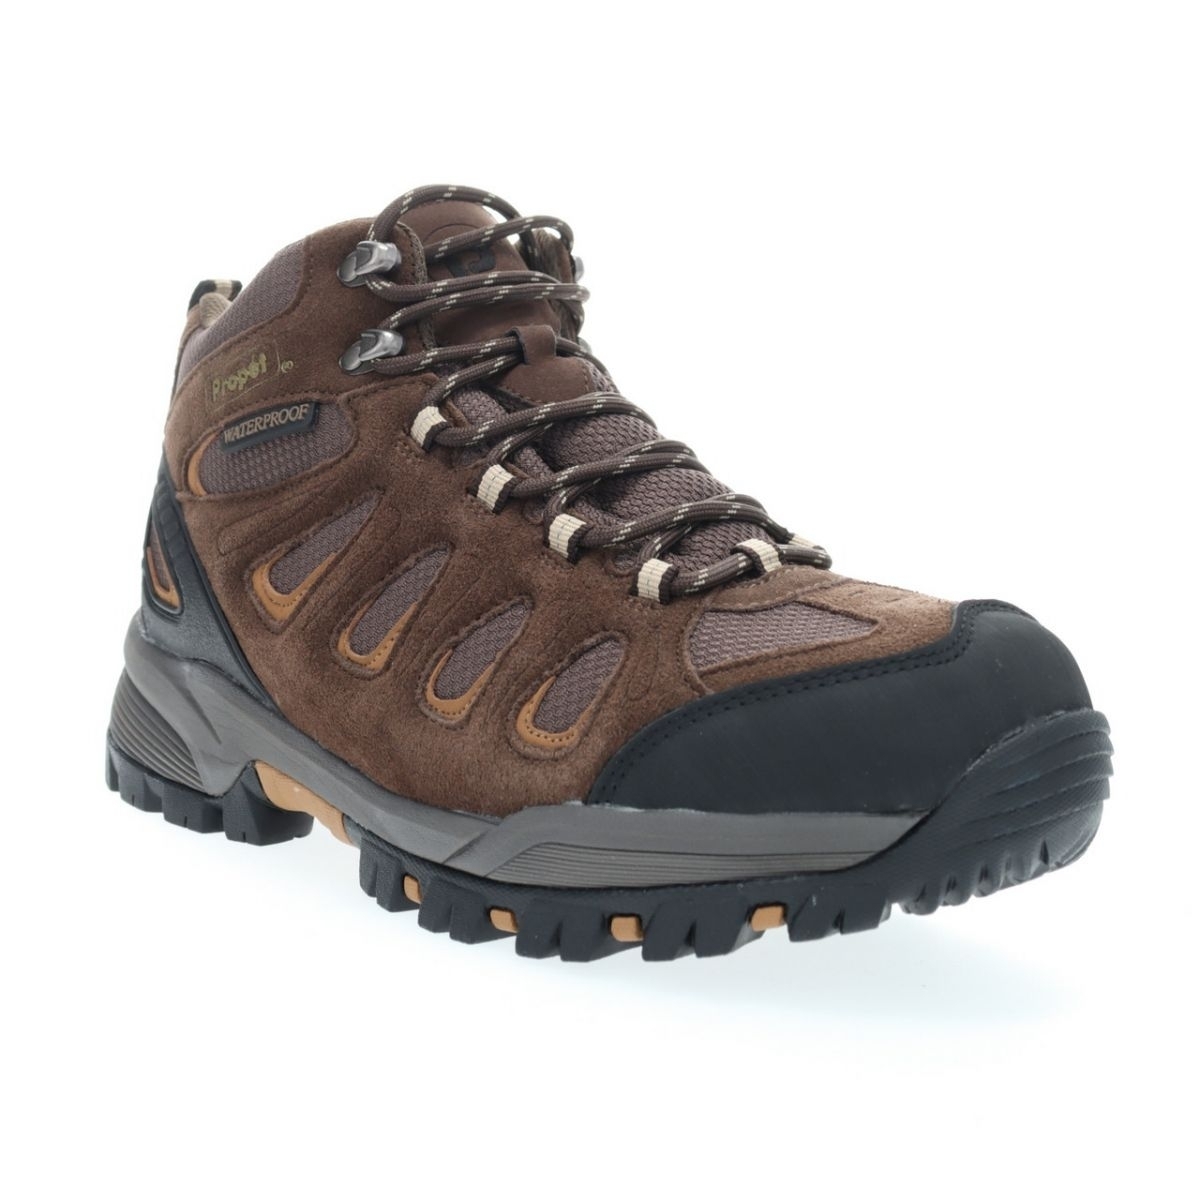 Propet Men's Ridge Walker Hiking Boot Brown - M3599BR 8 XX US Men BROWN - BROWN, 10.5 XX-Wide